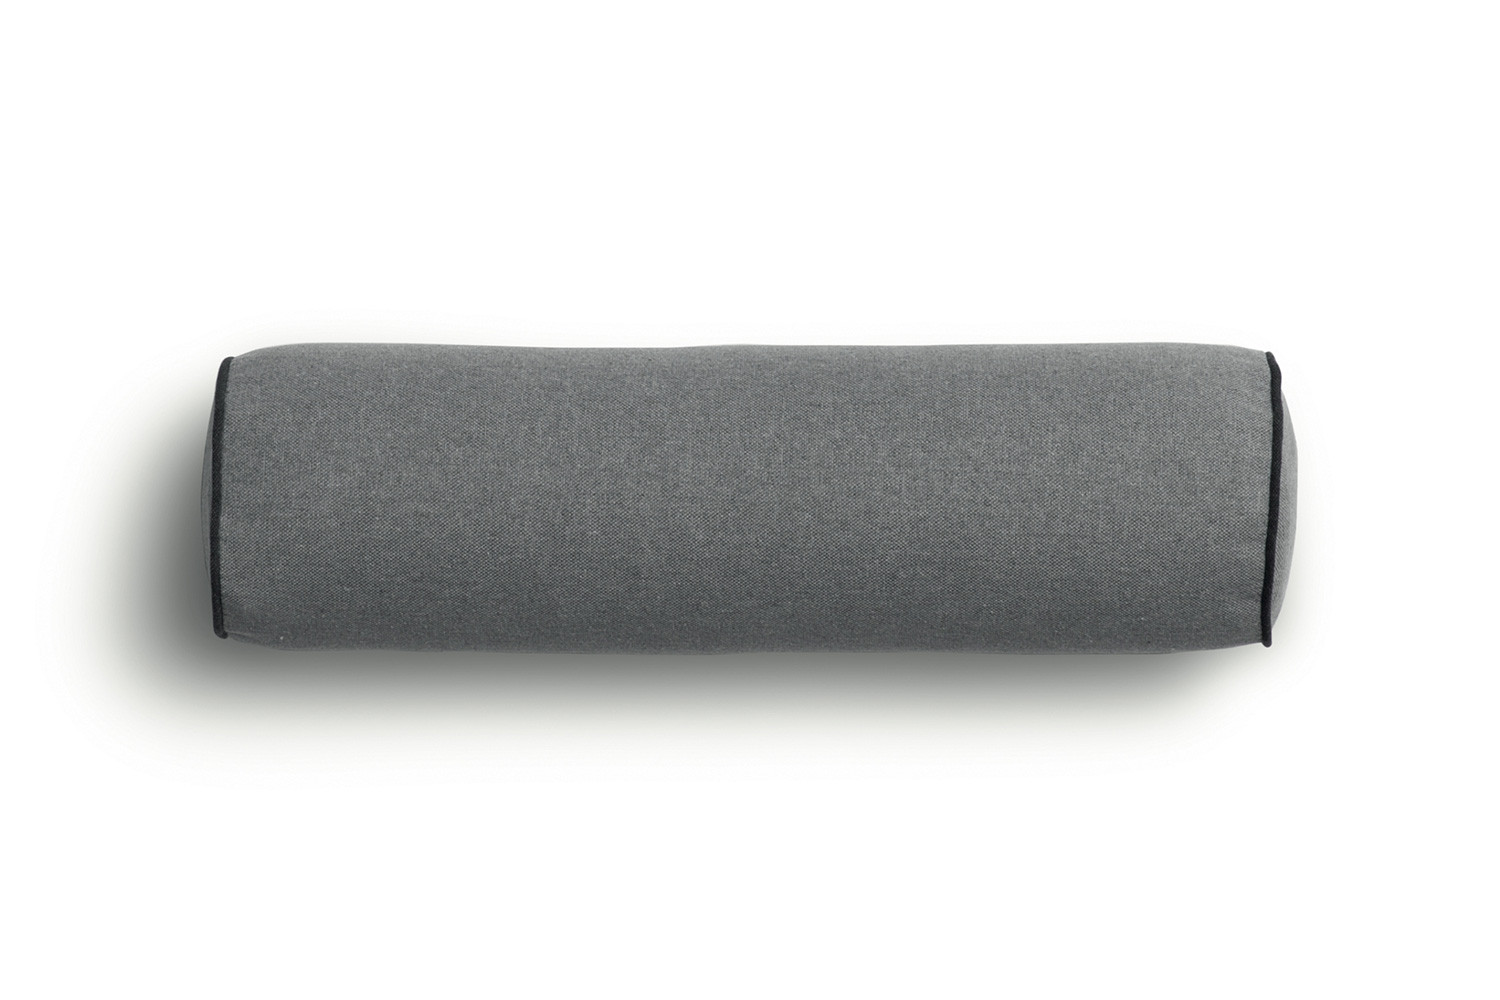 Cuscino a rullo cilindrico con bordino, della lunghezza di 55 cm